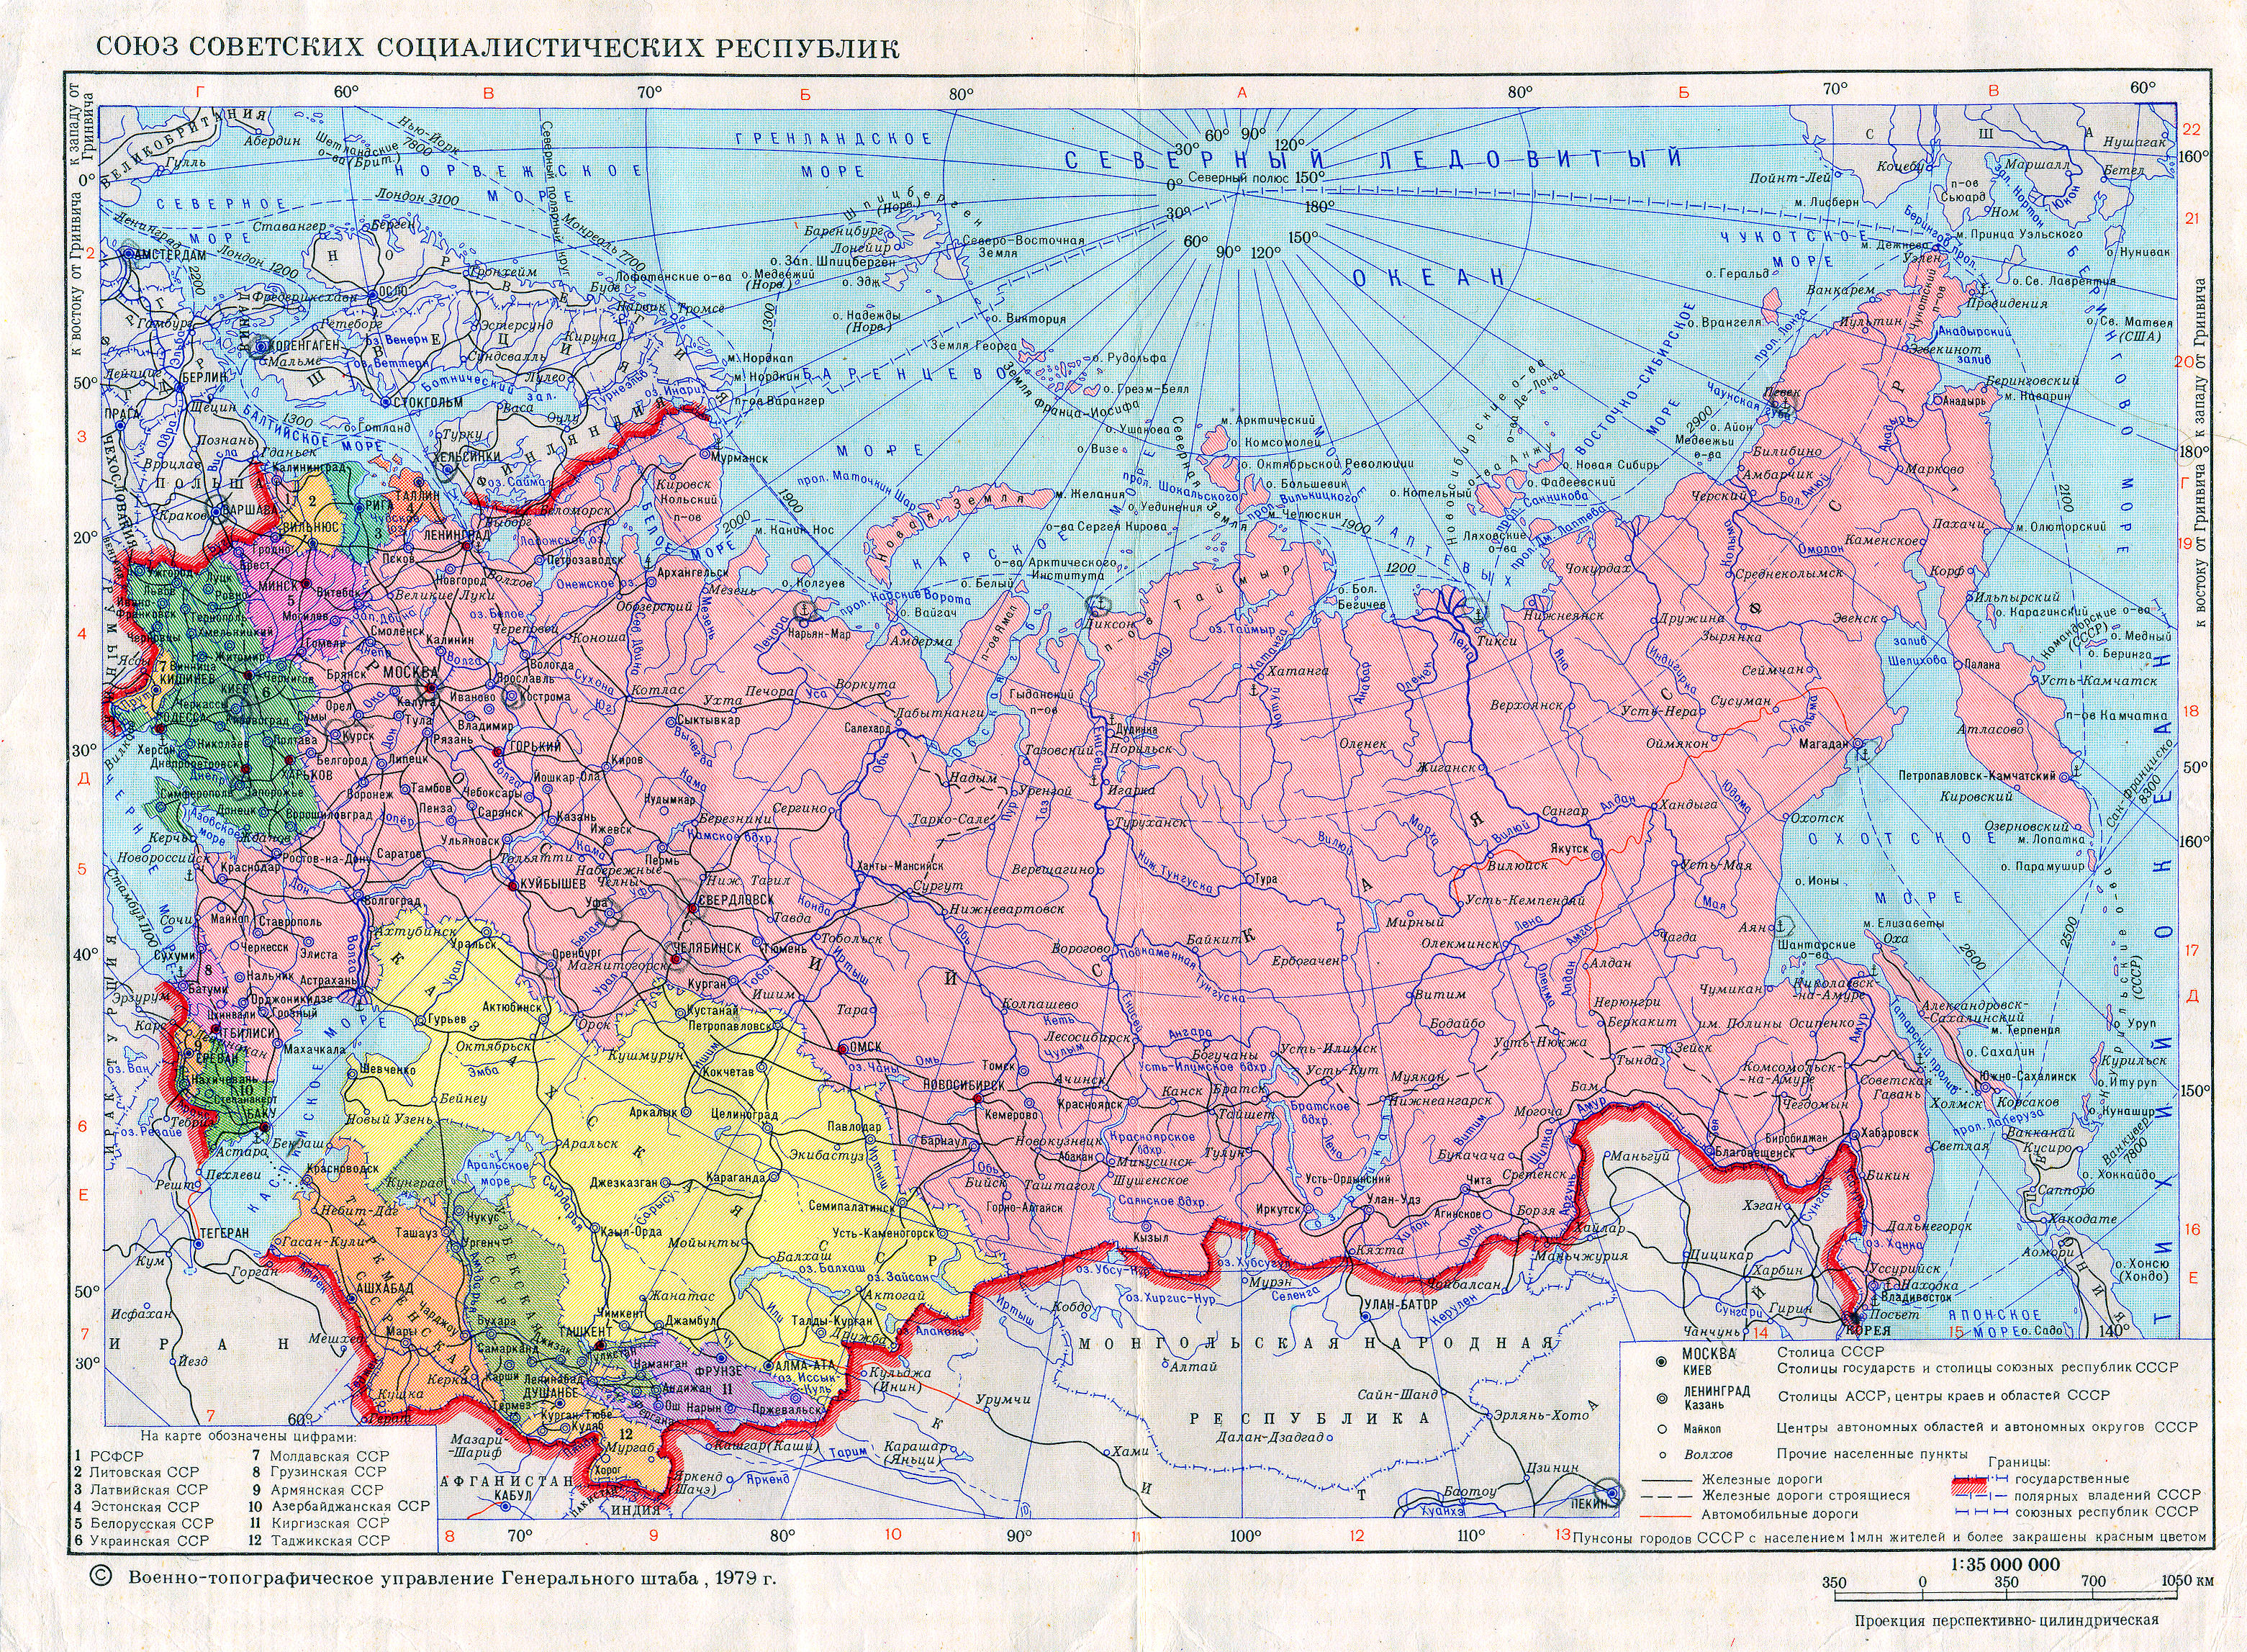 Карта союзных республик. Карта советского Союза. Карта СССР 1989 года. Карта союзных республик СССР. Карта СССР 1991 года.